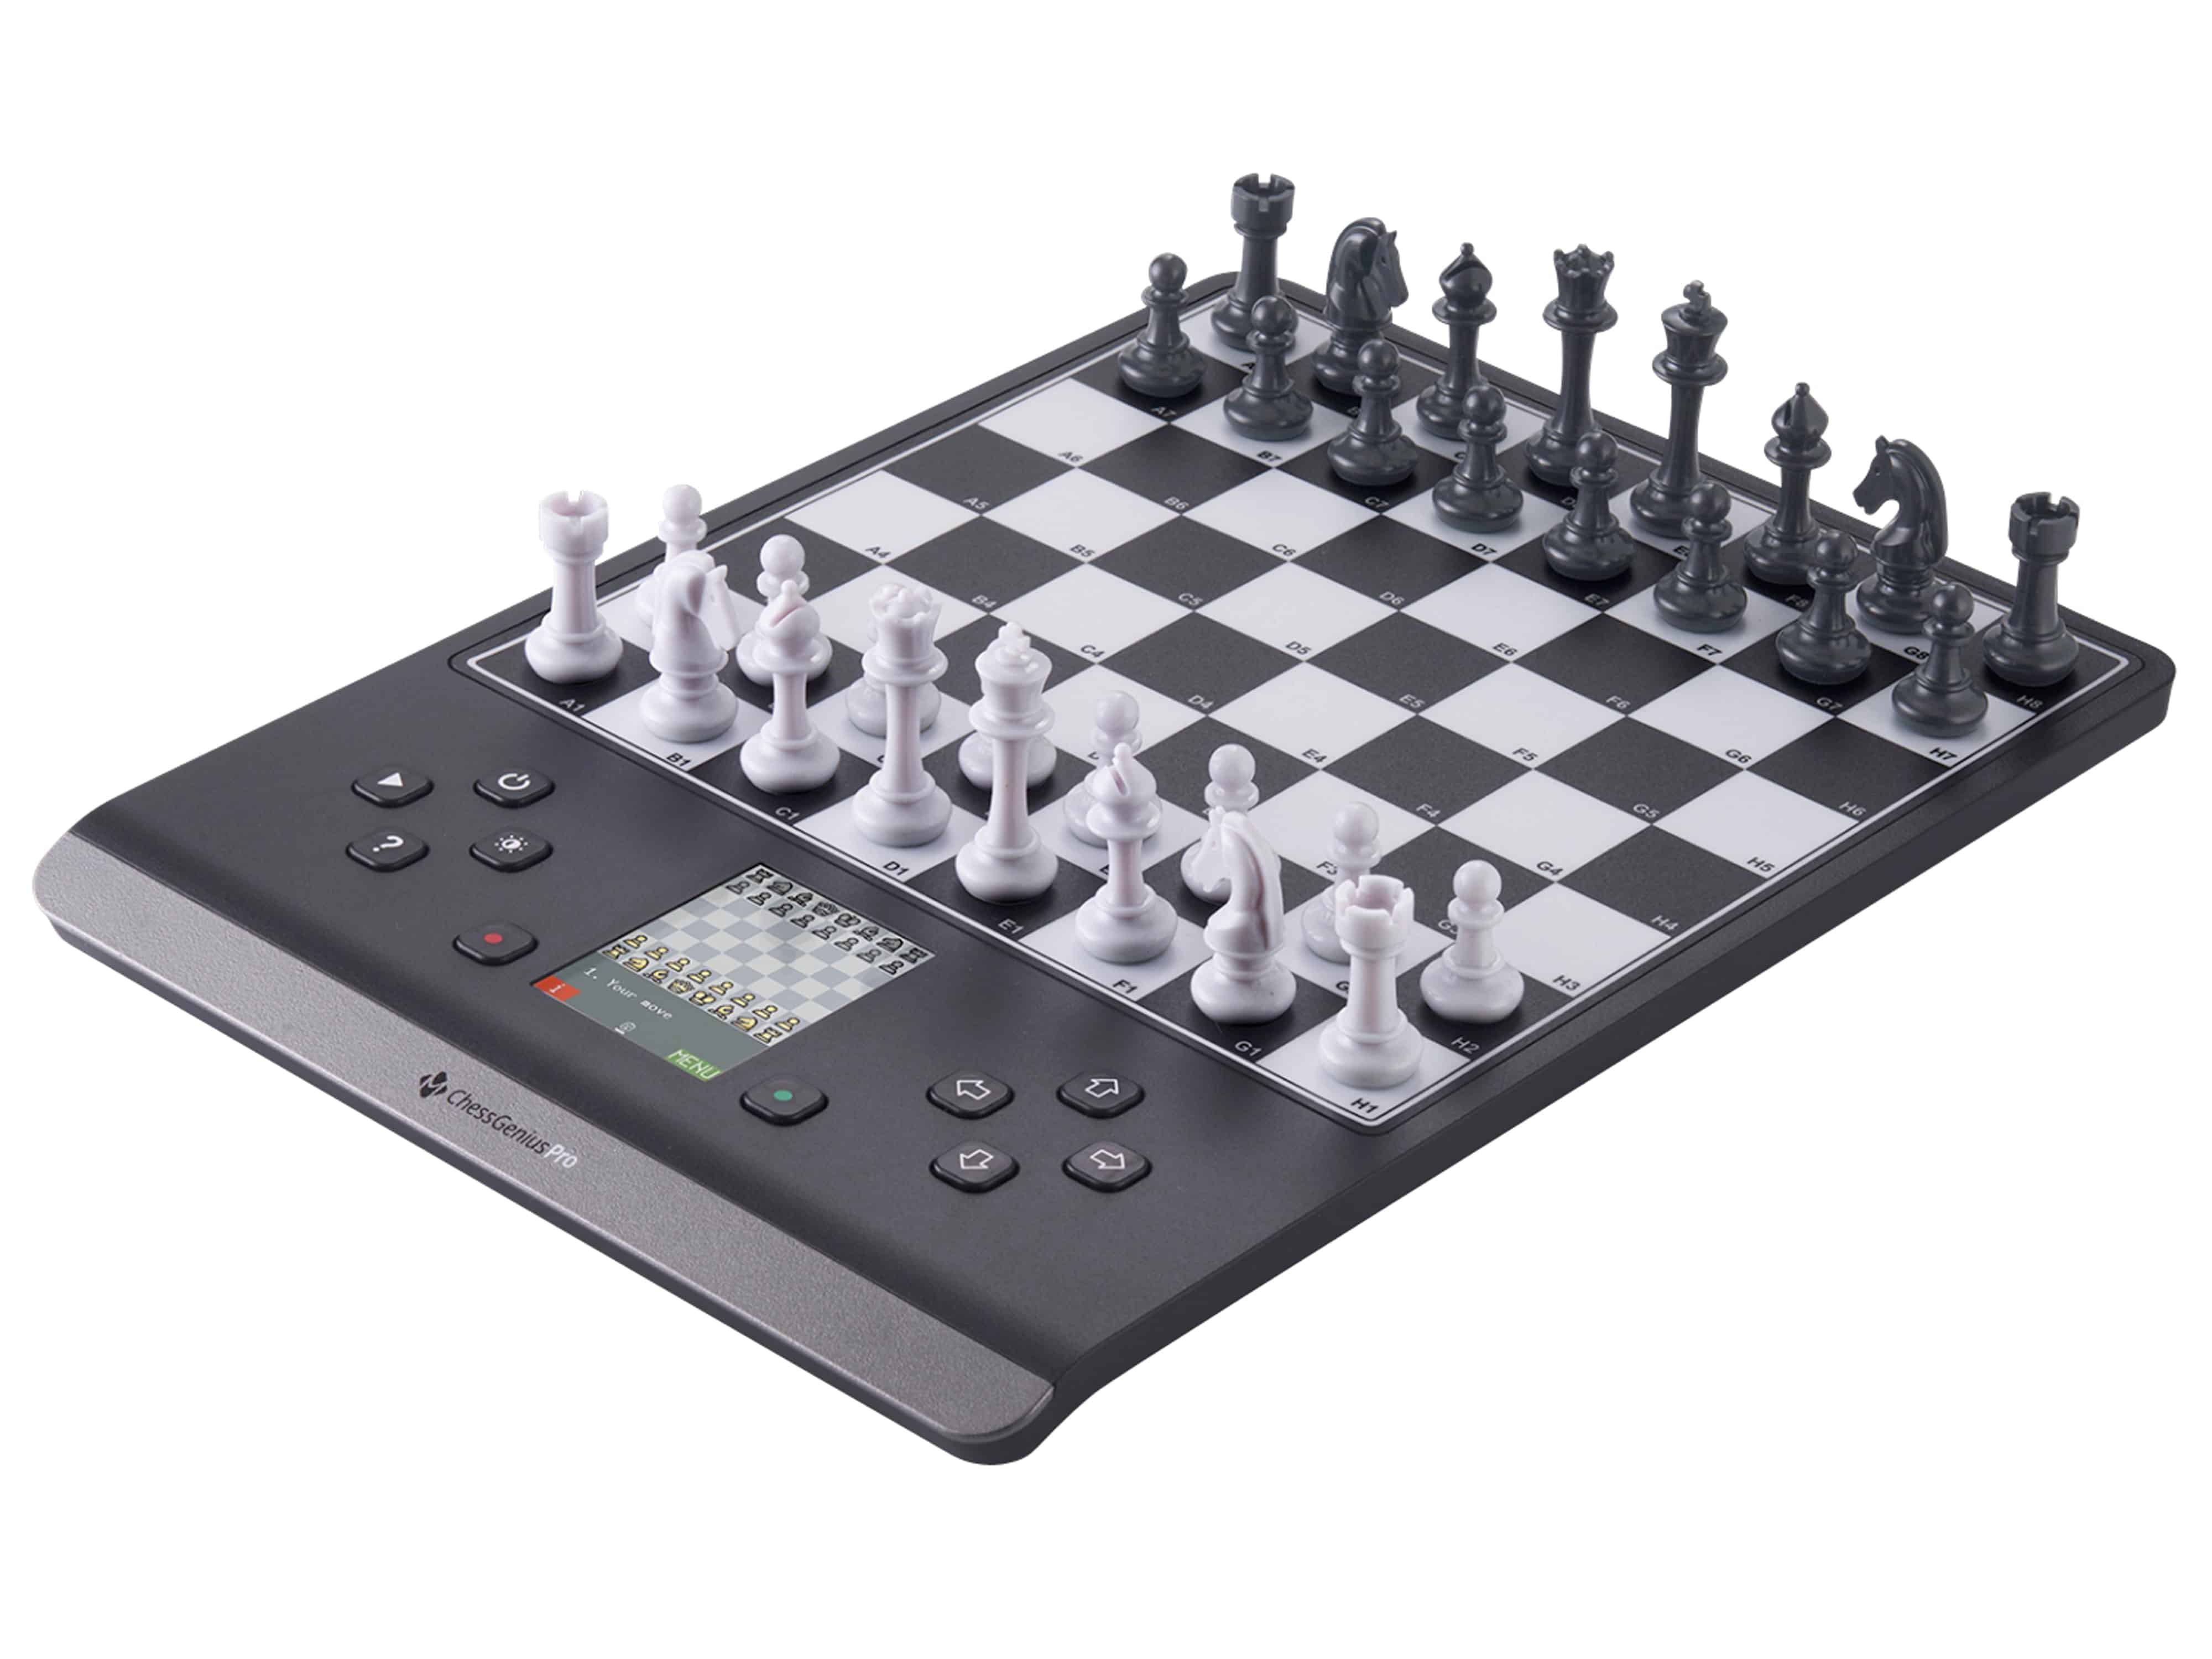 MILLENIUM Schachcomputer ChessGenius Pro